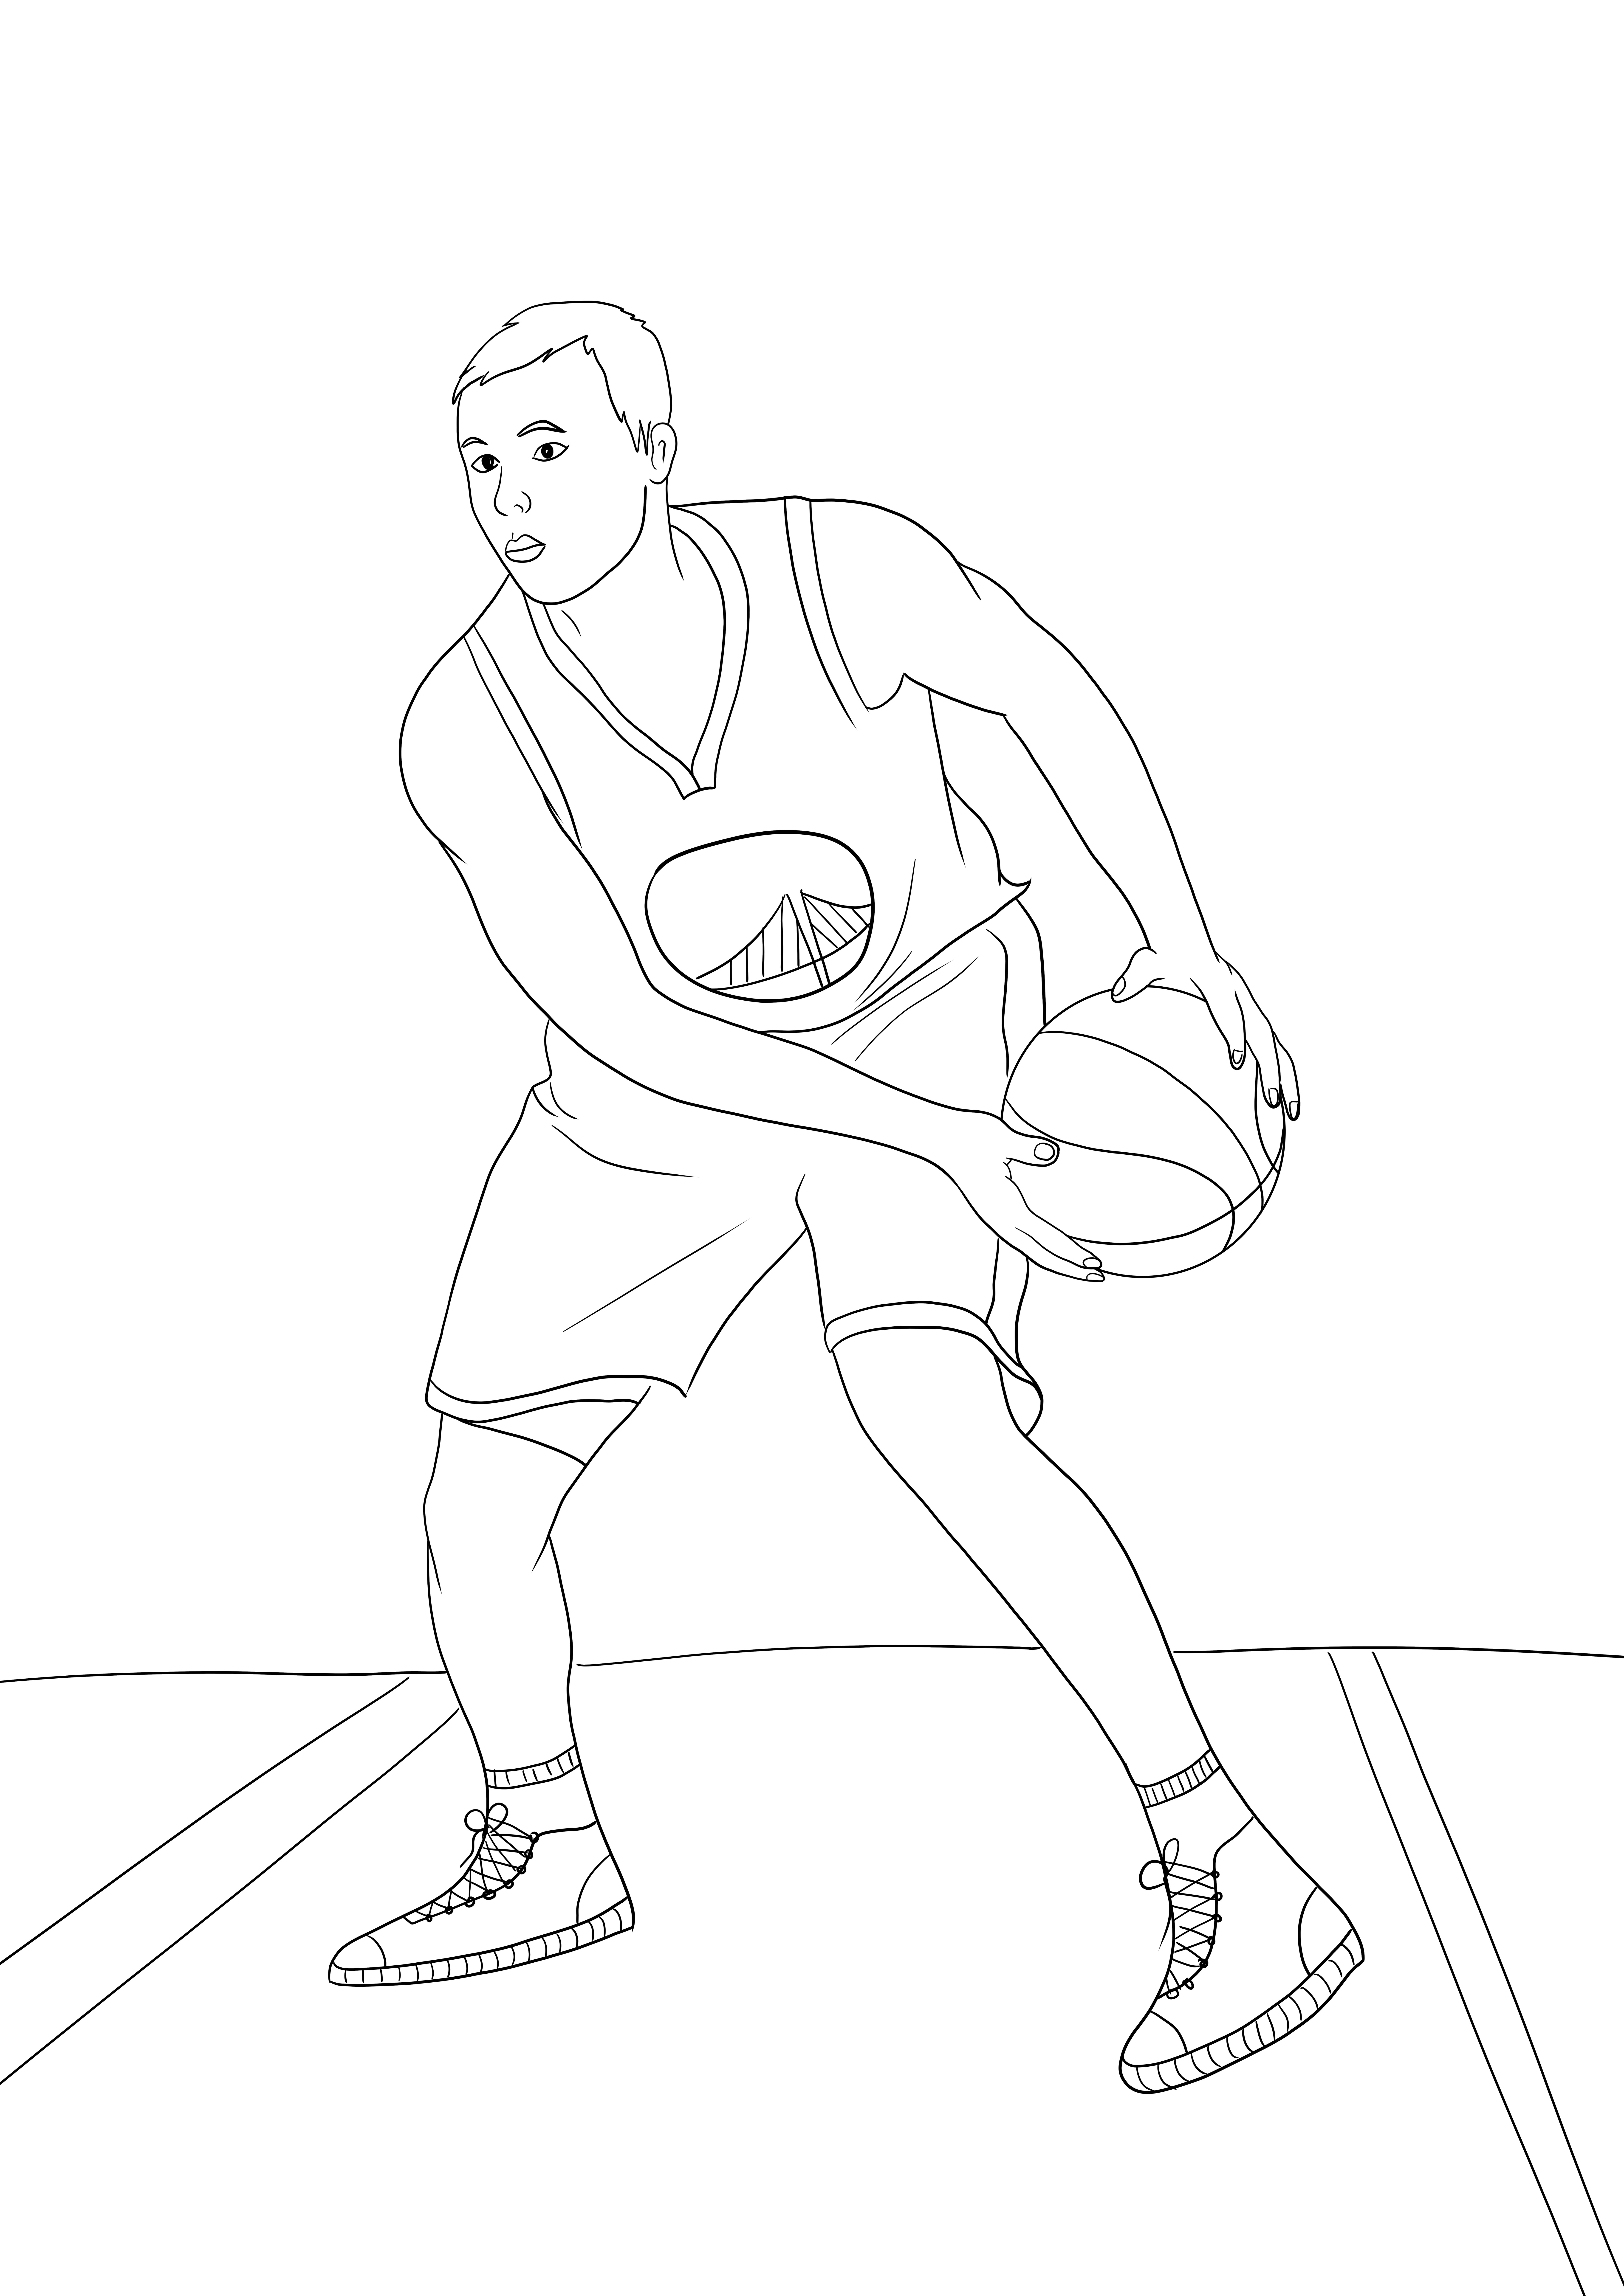 Stephen Curry van NBA eenvoudige kleuren en gratis download afbeelding kleurplaat